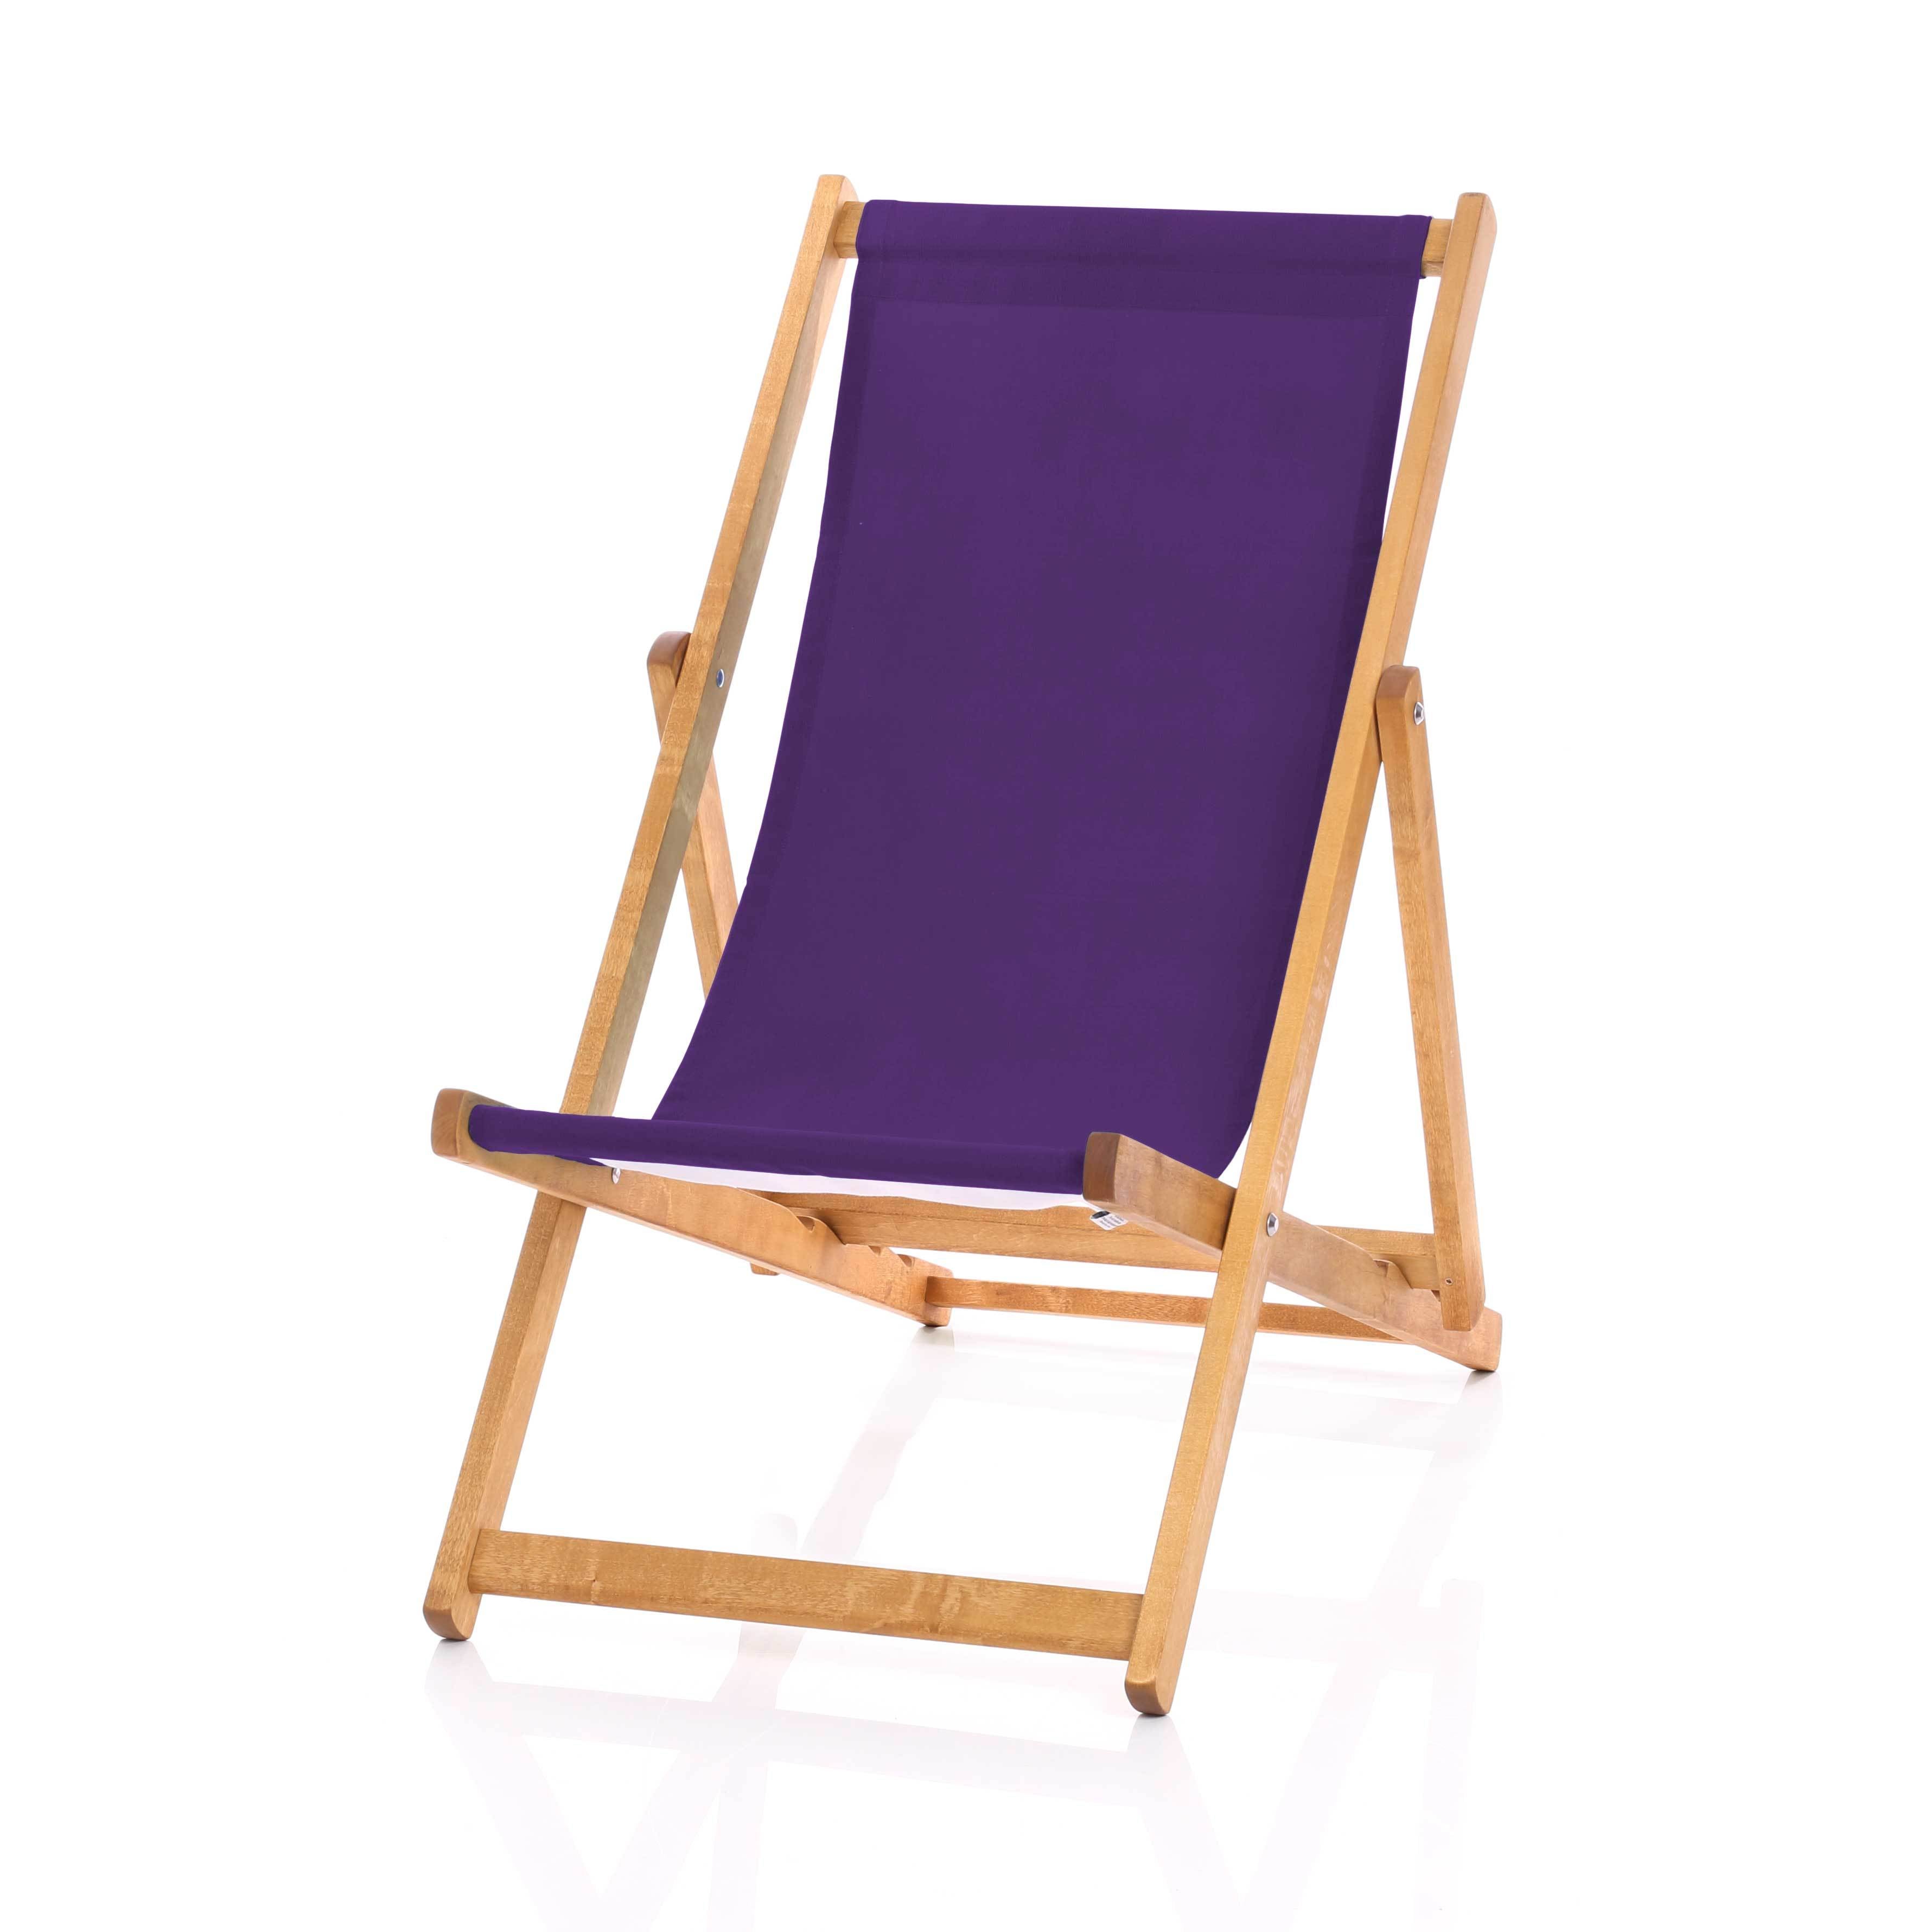 Hardwood Deckchair - Plain Purple